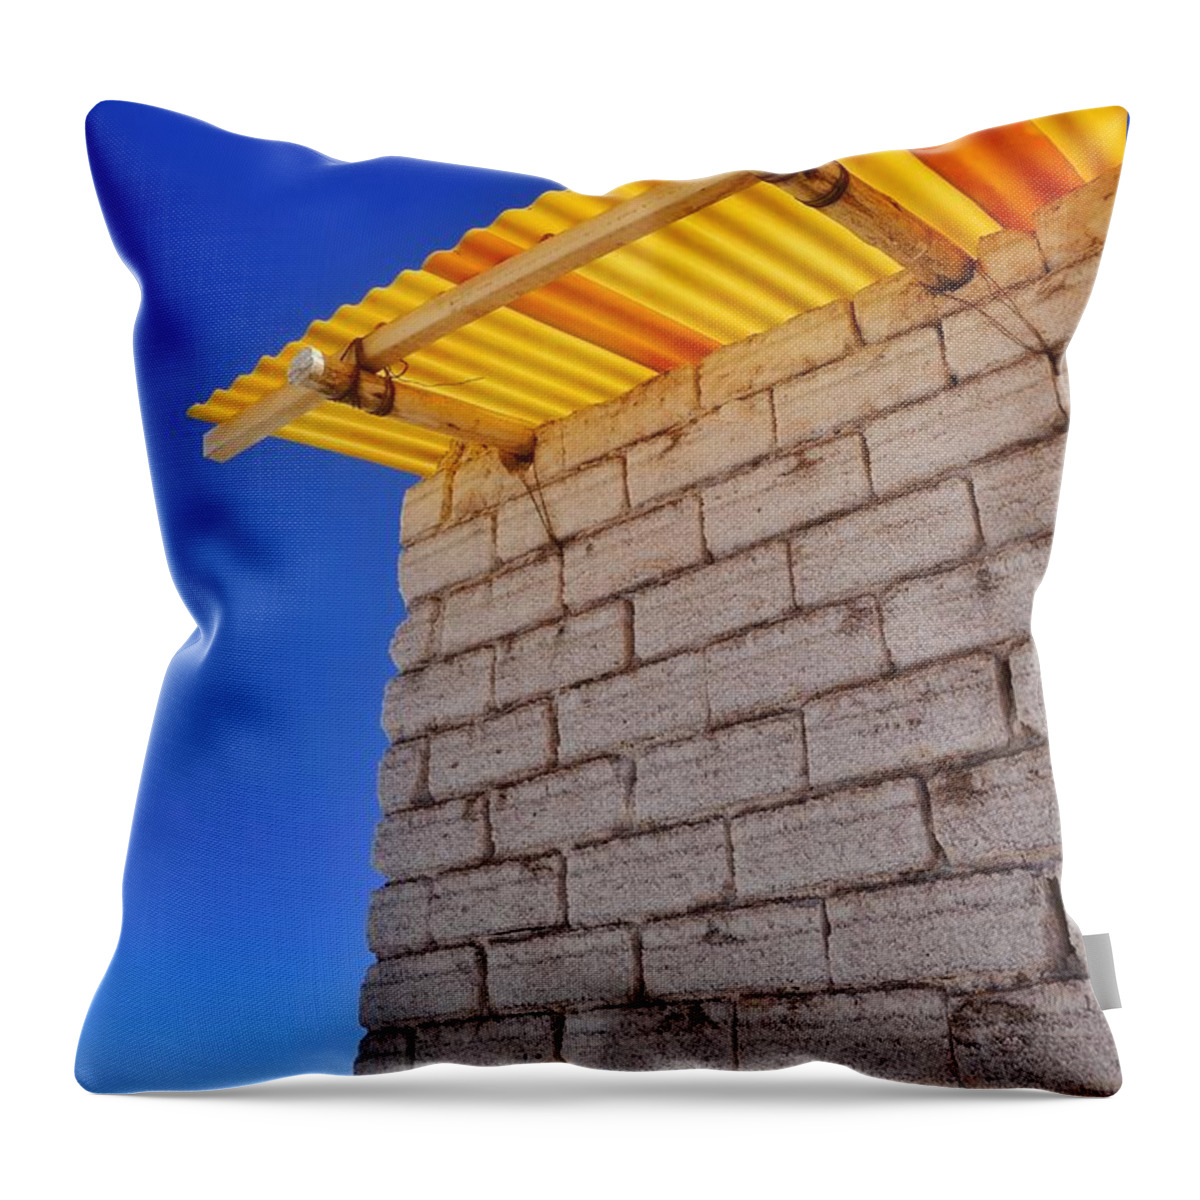 Salar De Uyuni Tour 65 Throw Pillow featuring the photograph Salar de Uyuni Tour 65 by Skip Hunt